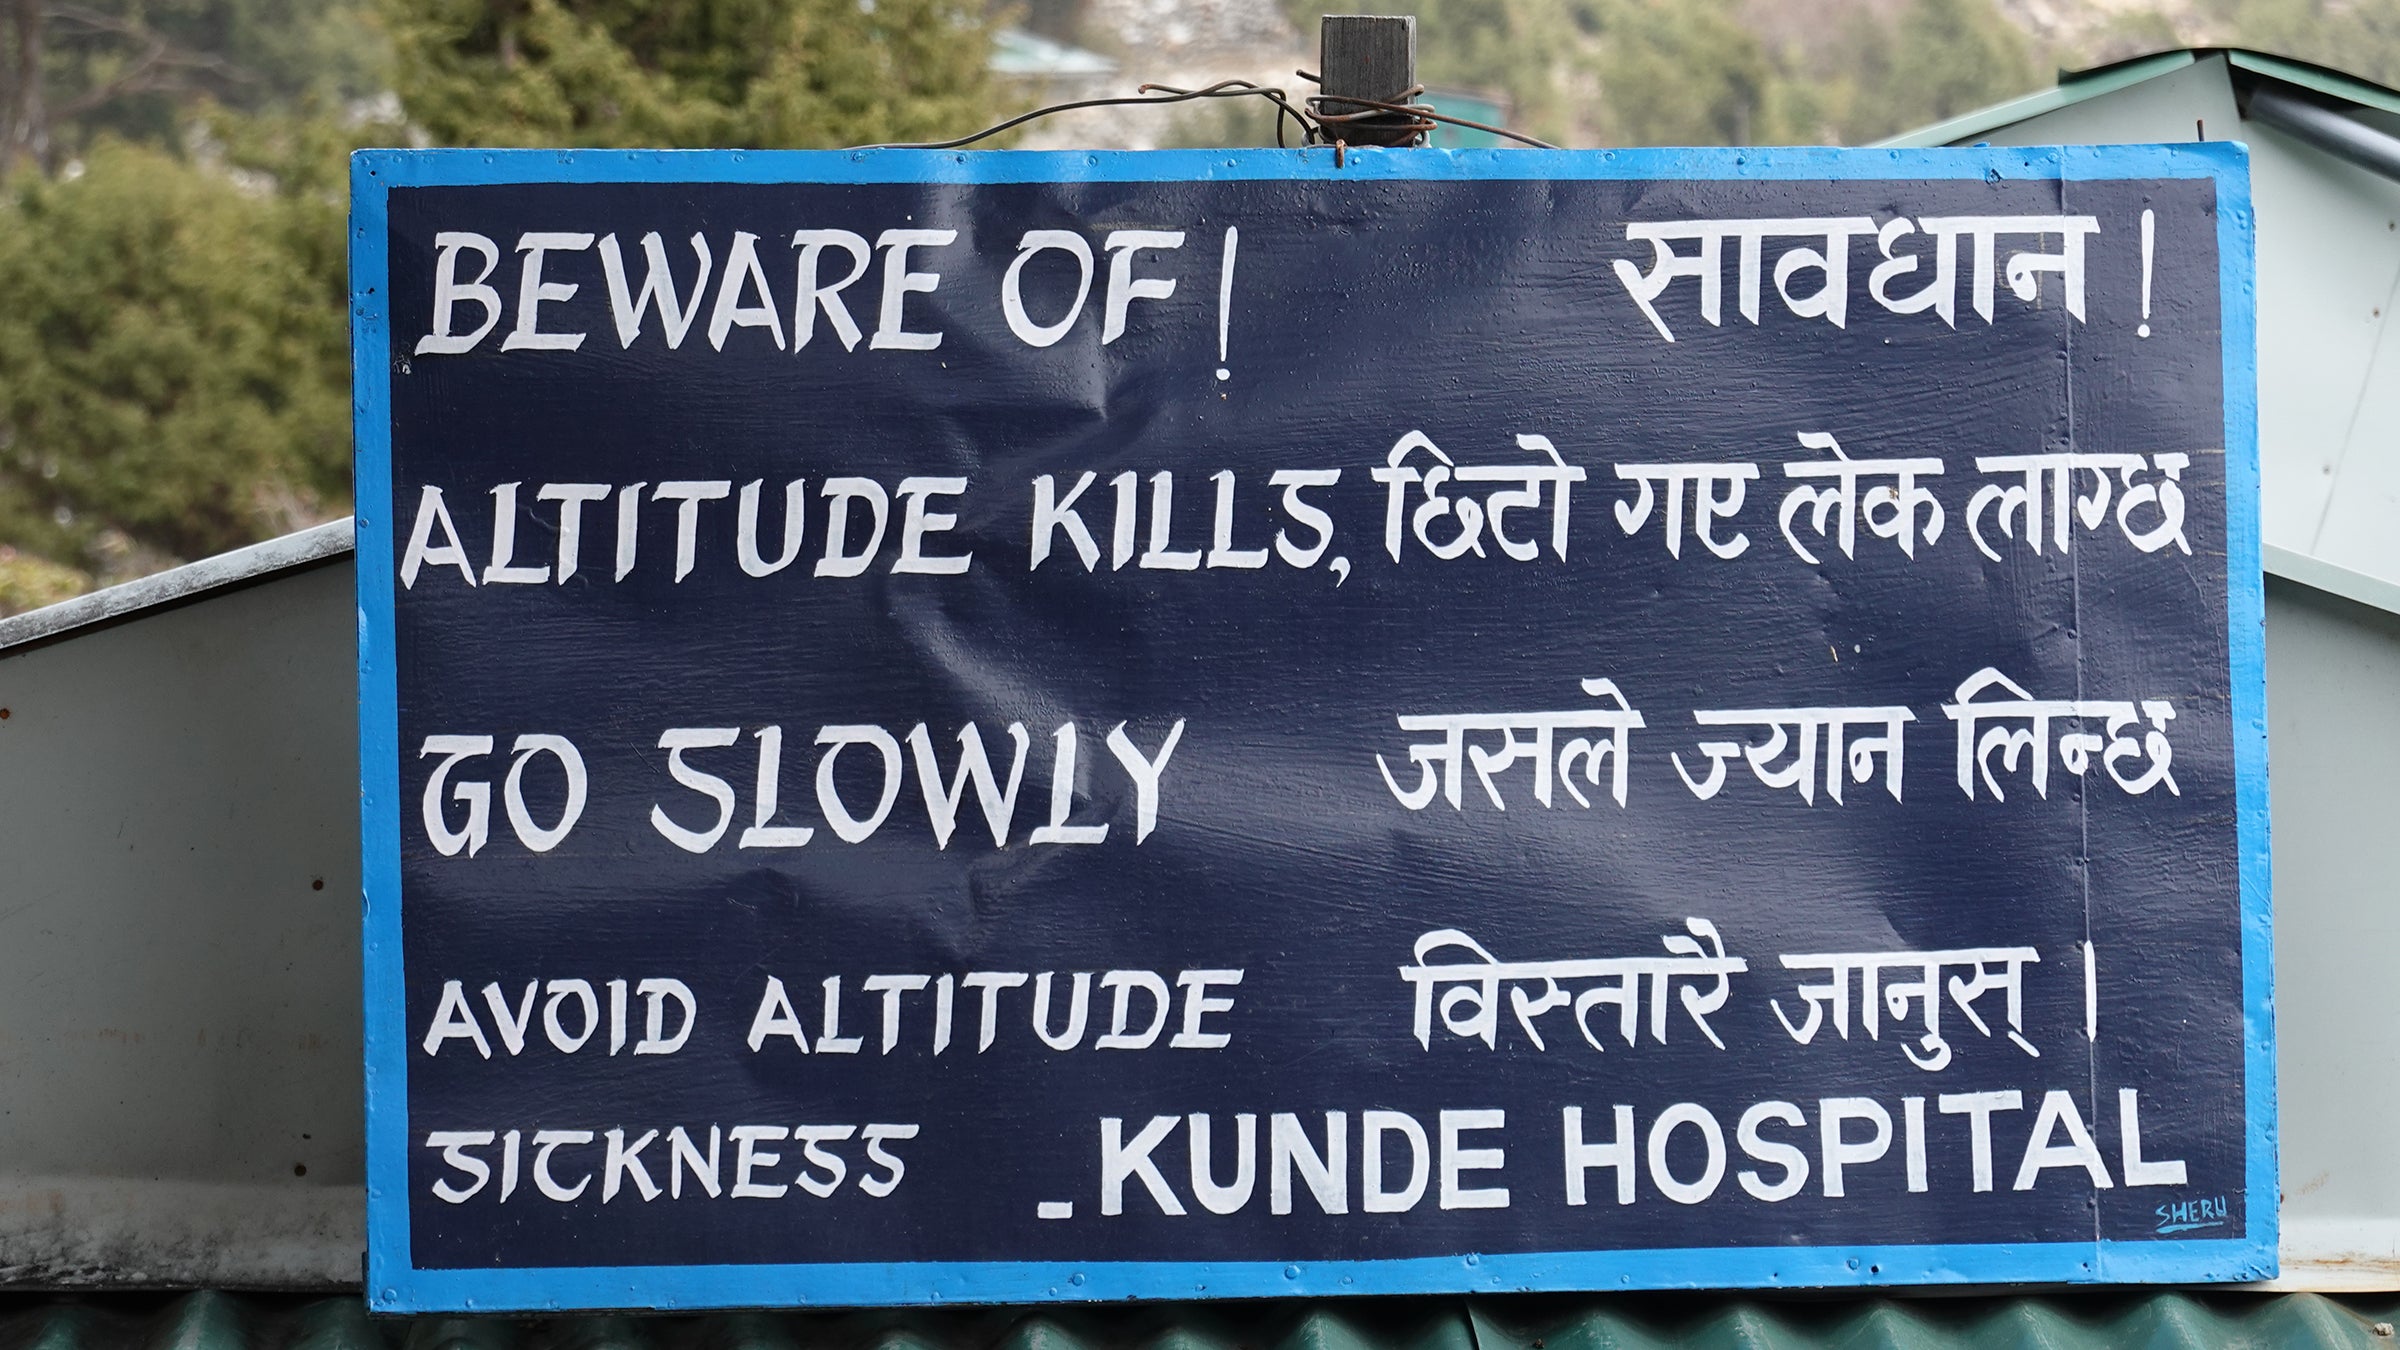 Hospital sign in the village of Khunde